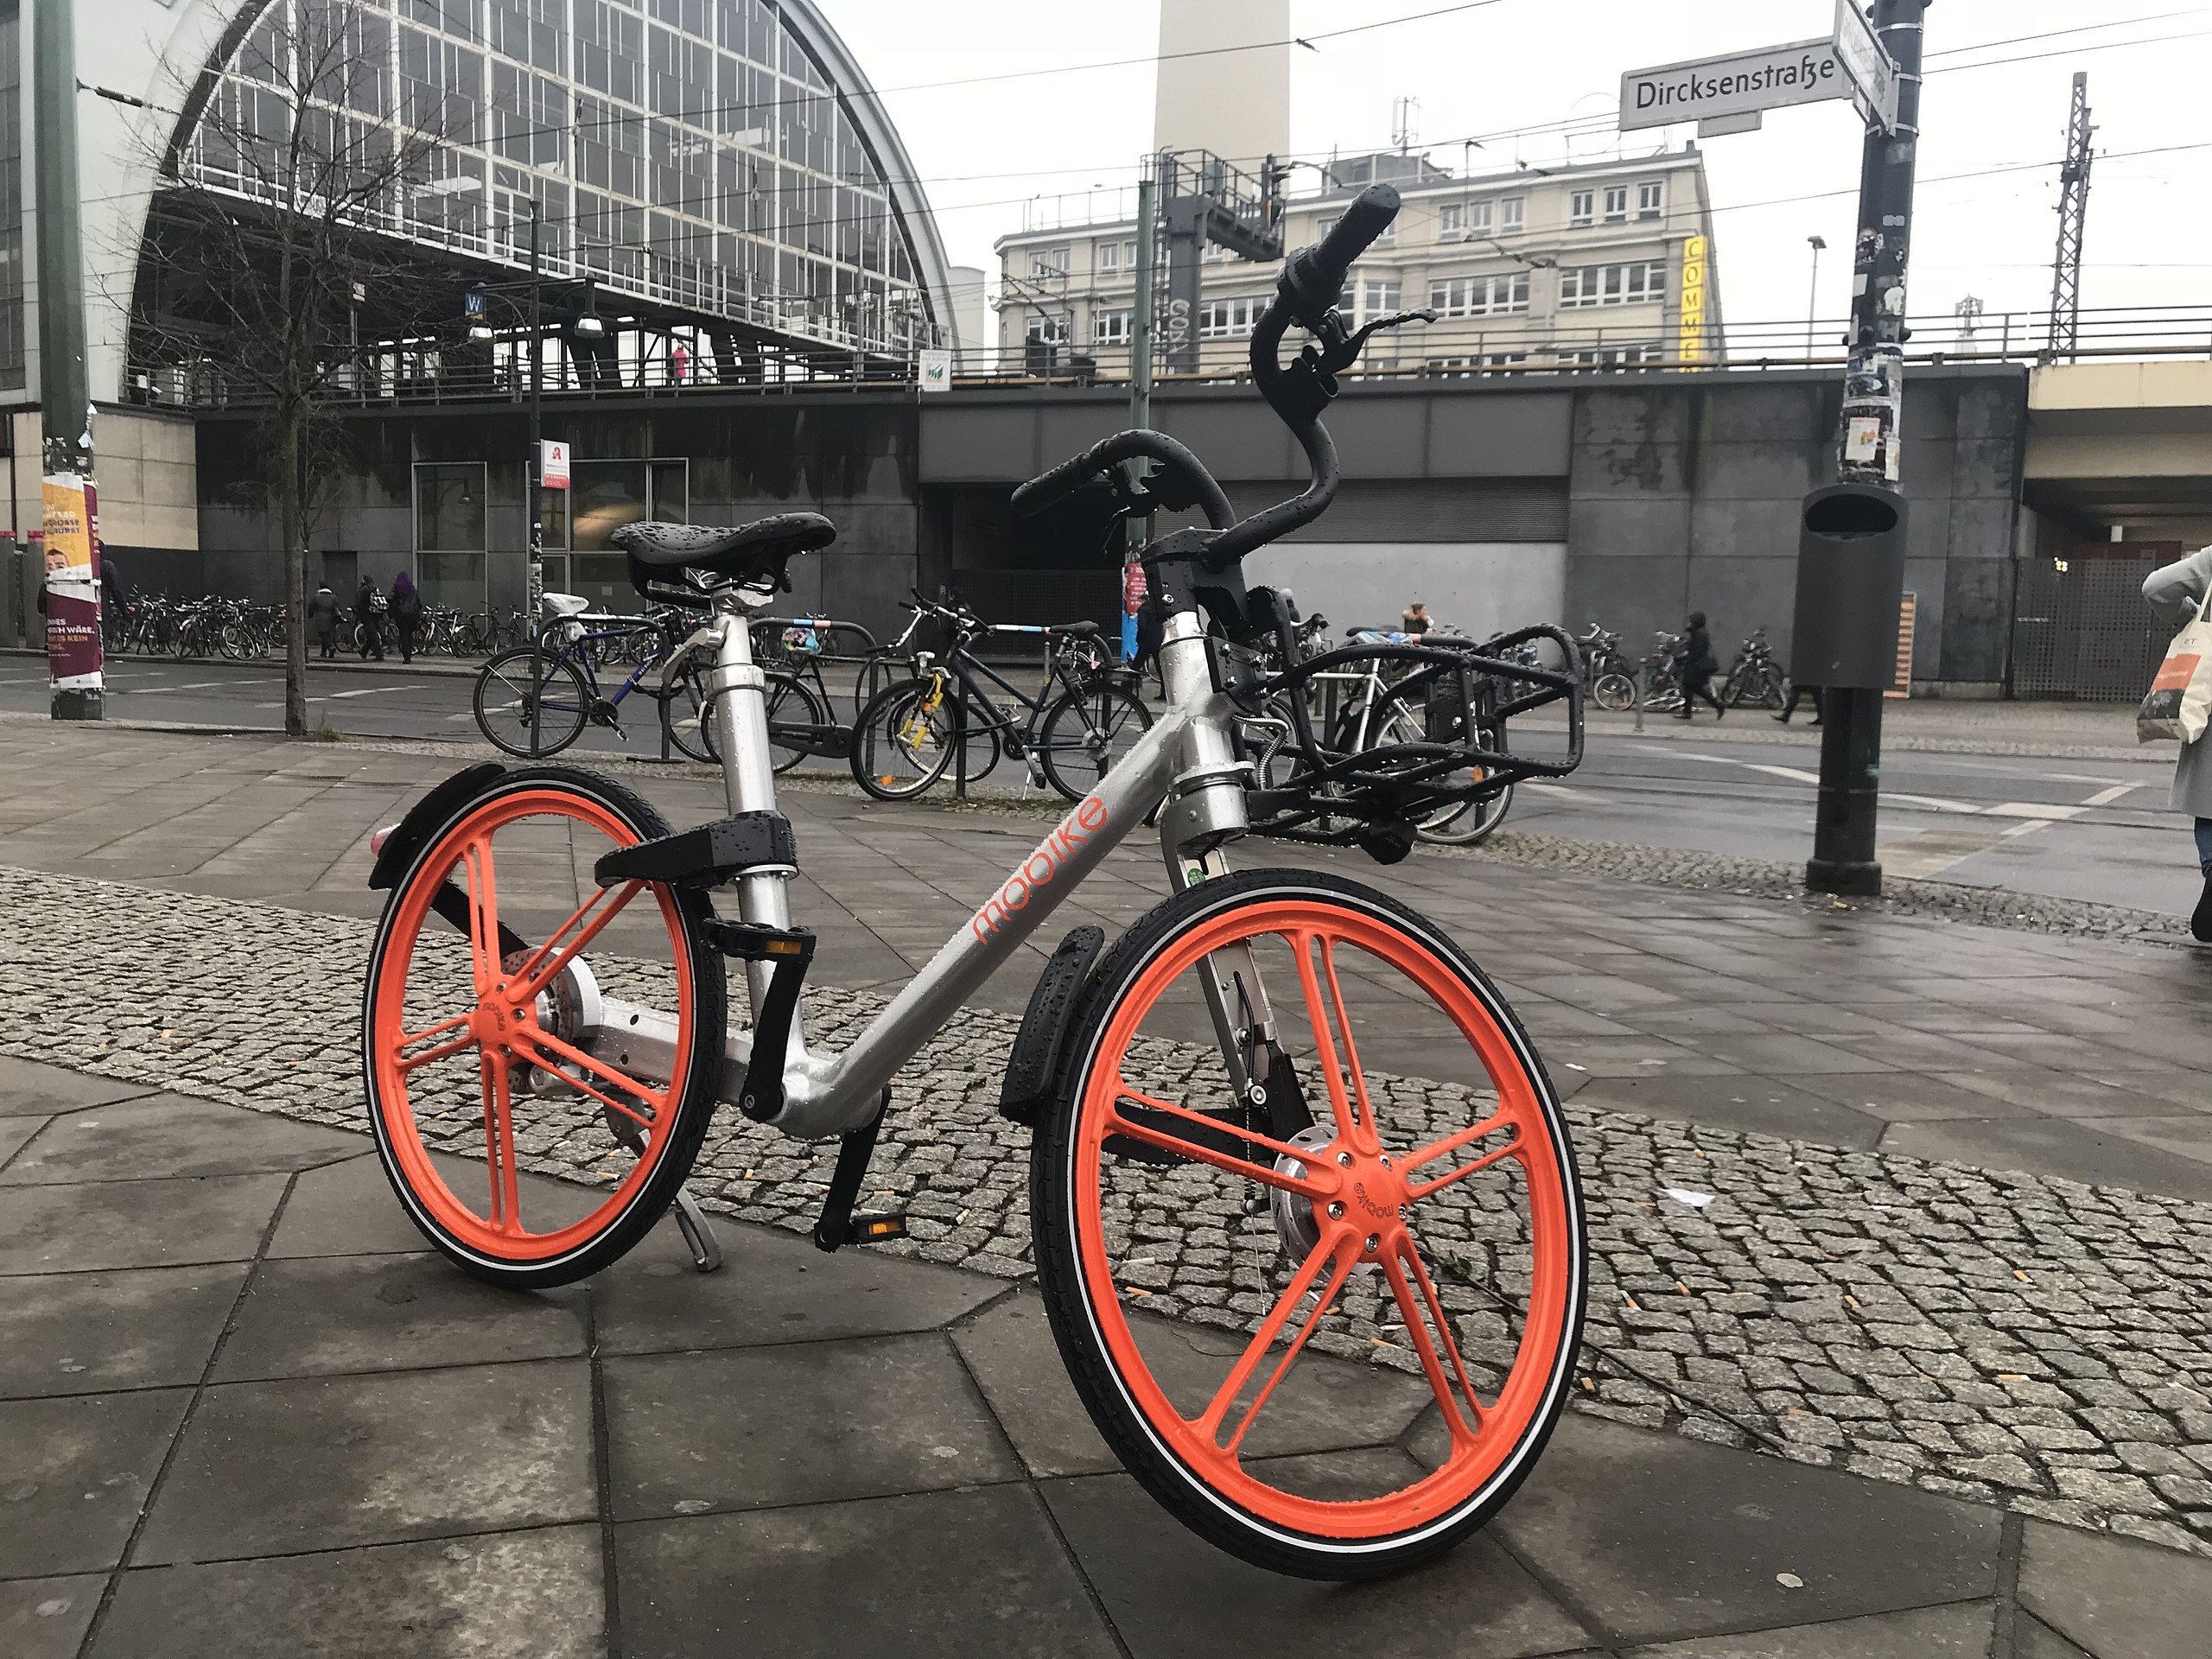 Ein Mobike-Fahrrad am Alexanderplatz. Foto: MNXANL / Wikimedia / CC BY-SA 4.0